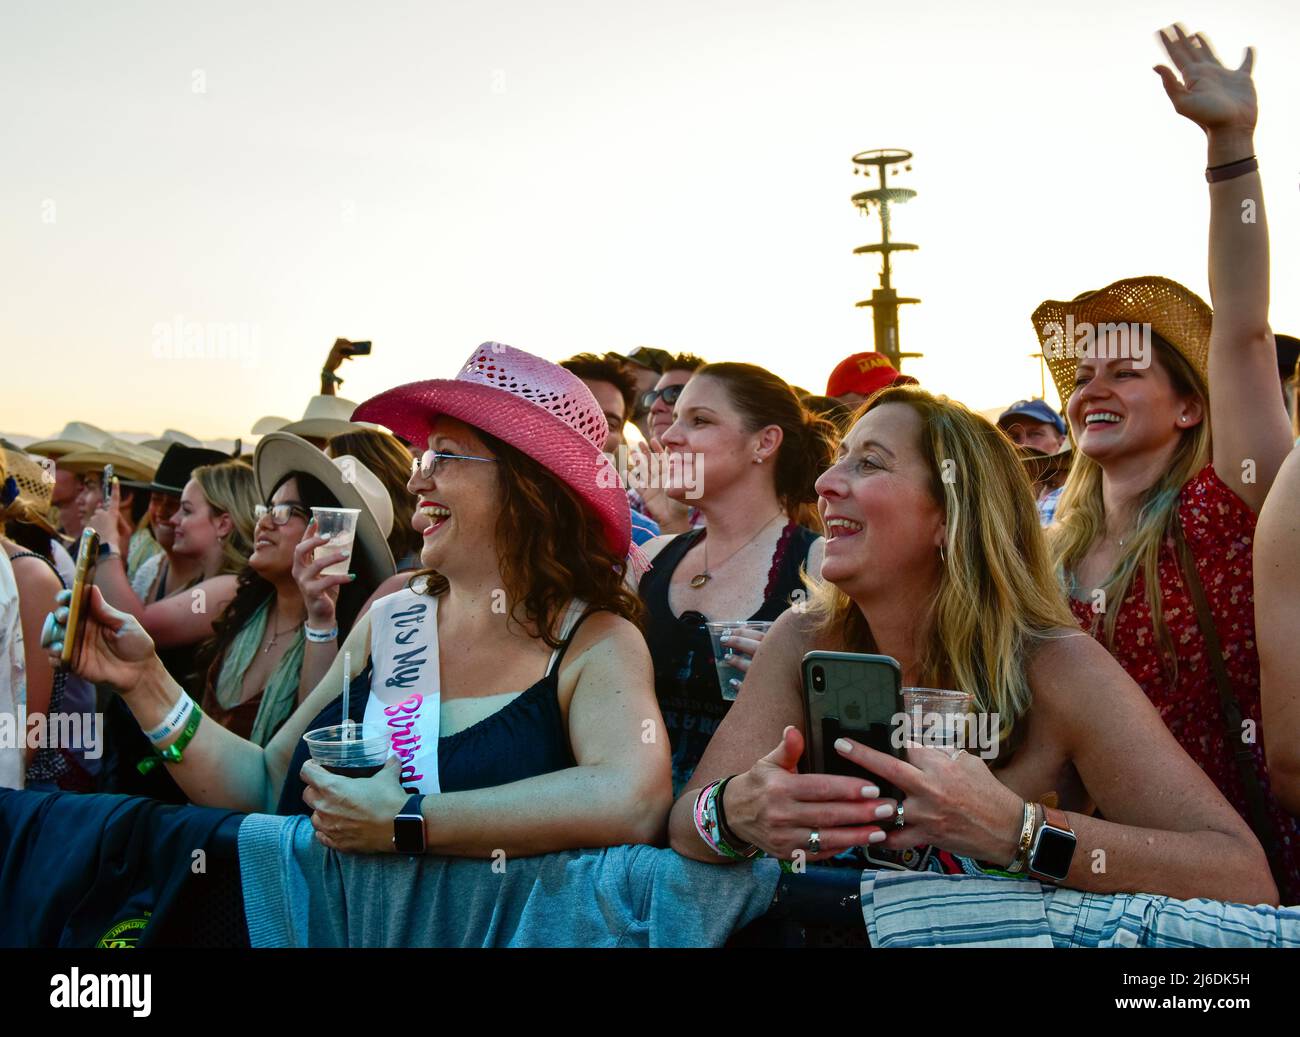 Indio, Californie, le 30 avril 2022 - la foule s'amuse au Stagecoach Country Music Festival. Crédit : Ken Howard/Alay Live News Banque D'Images